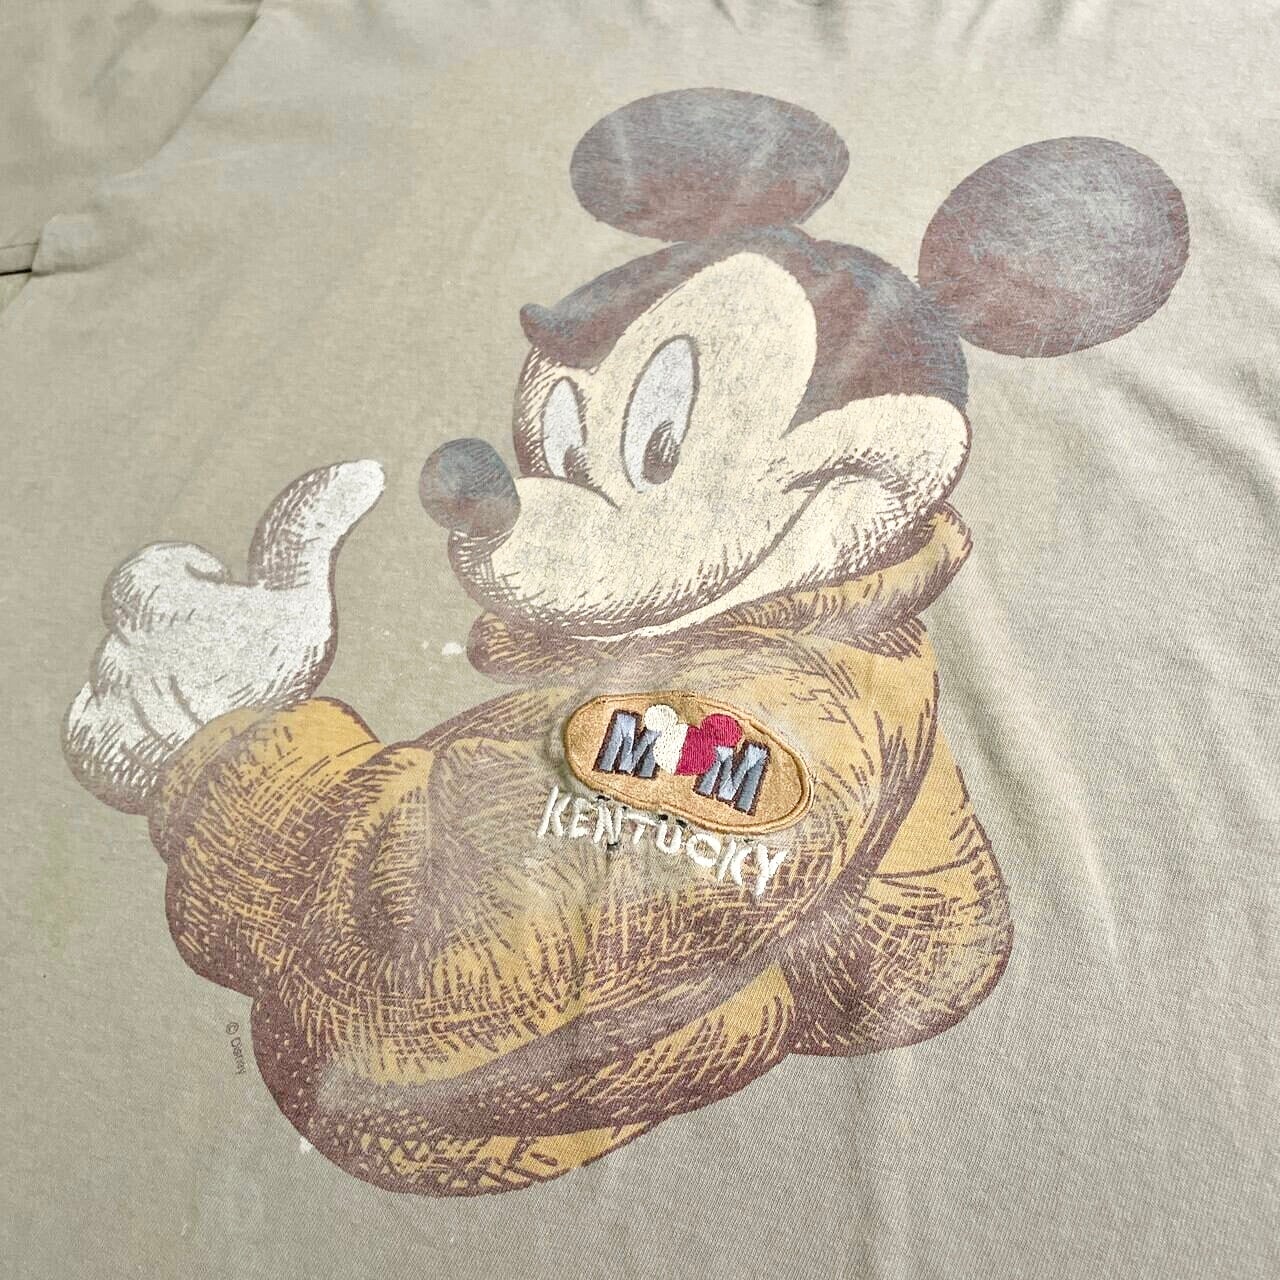 90S USA製 ディズニー ミッキーマウス 刺繍 キャラクター Tシャツ